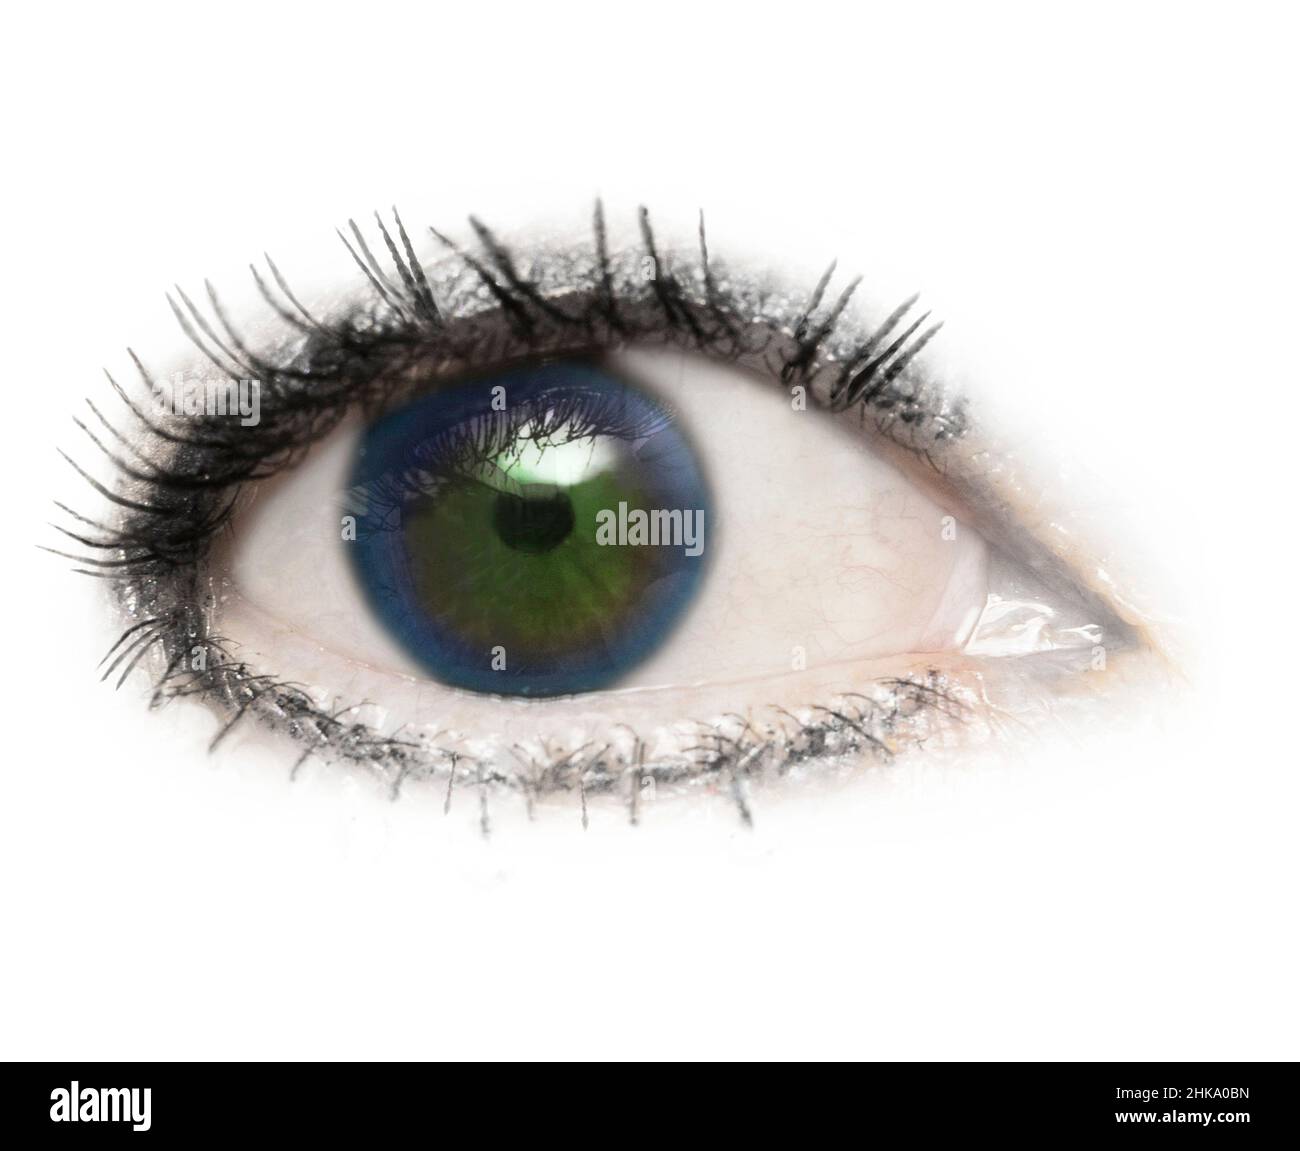 Ein Auge, Augapfel, zwei Farben blau und grün, isoliert mit Wimpern Wimpern auf weißem Hintergrund. Partielle Heterchromie. Augenlid, Pupille, Sclera, Iris. Stockfoto